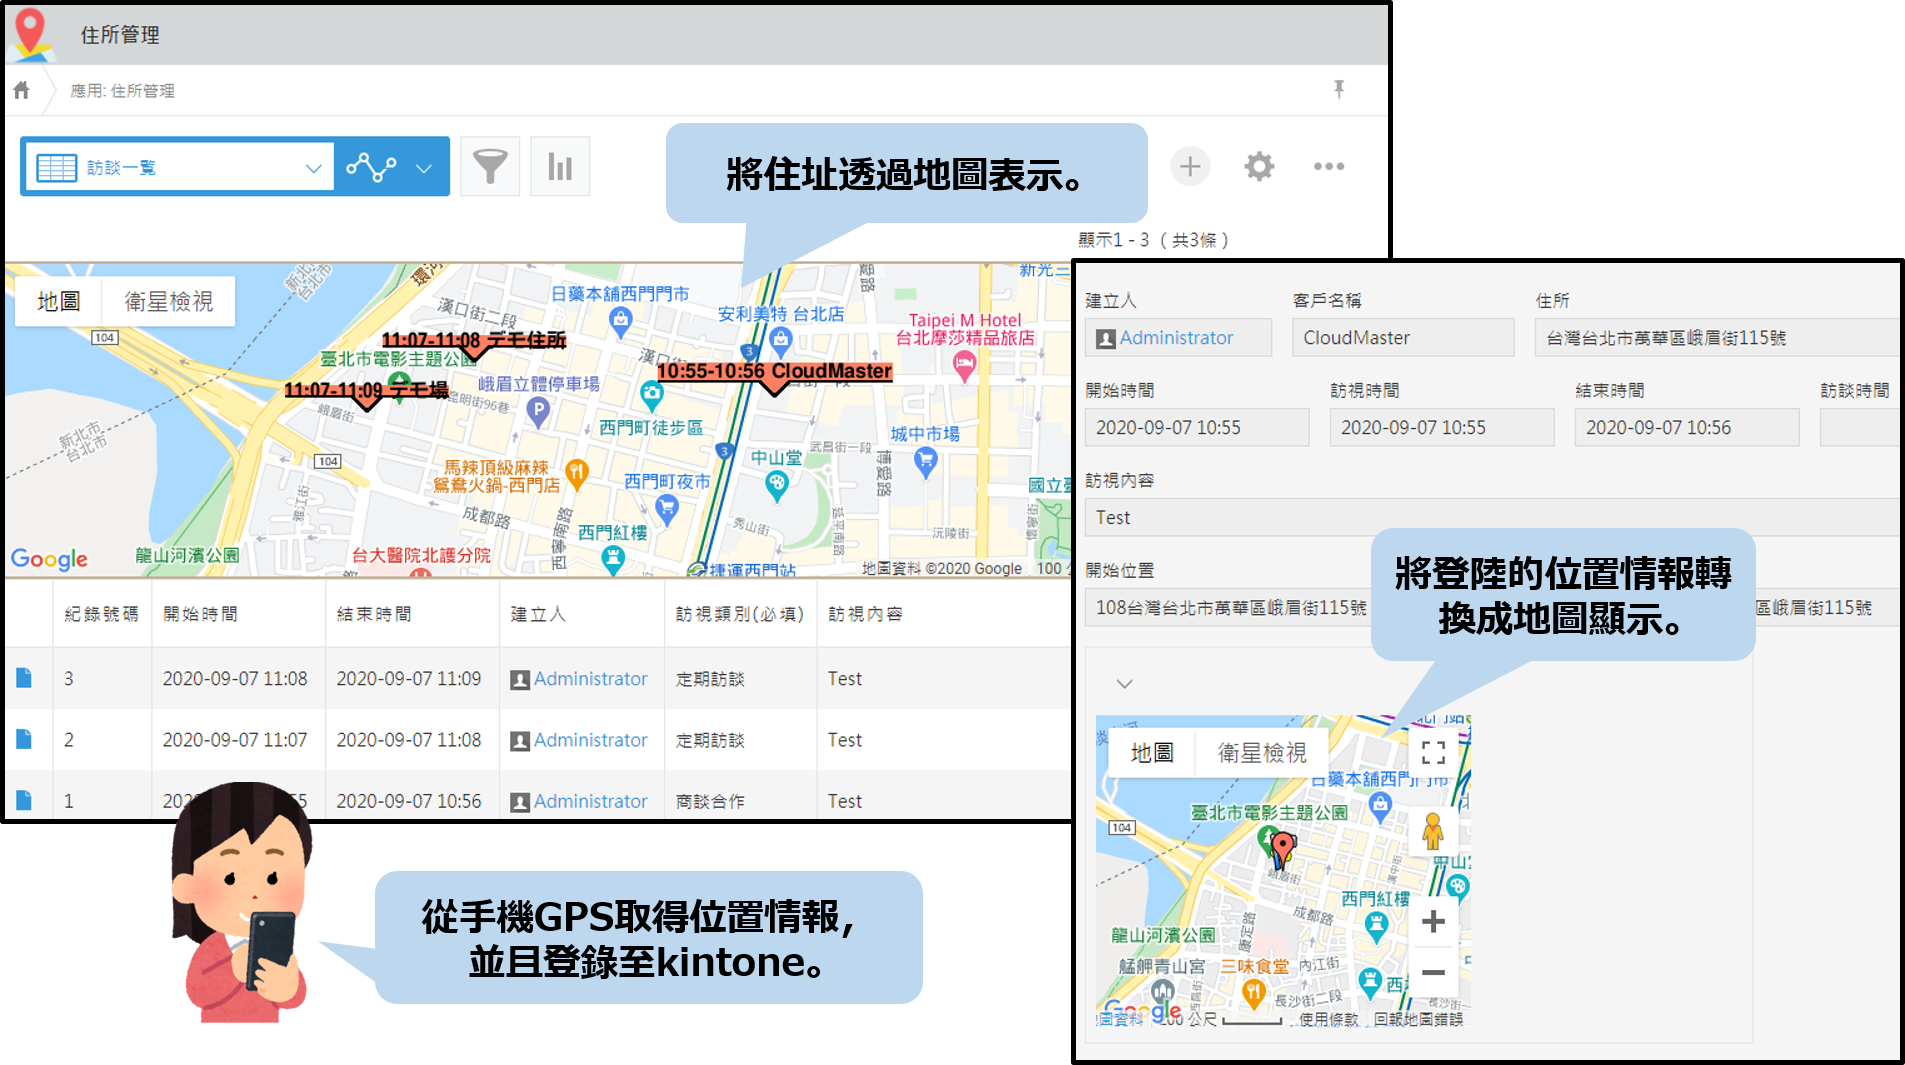 將住址透過地圖表示。 將登陸的位置情報轉換成地圖顯示。
從手機GPS取得位置情報，並且登錄至kintone。